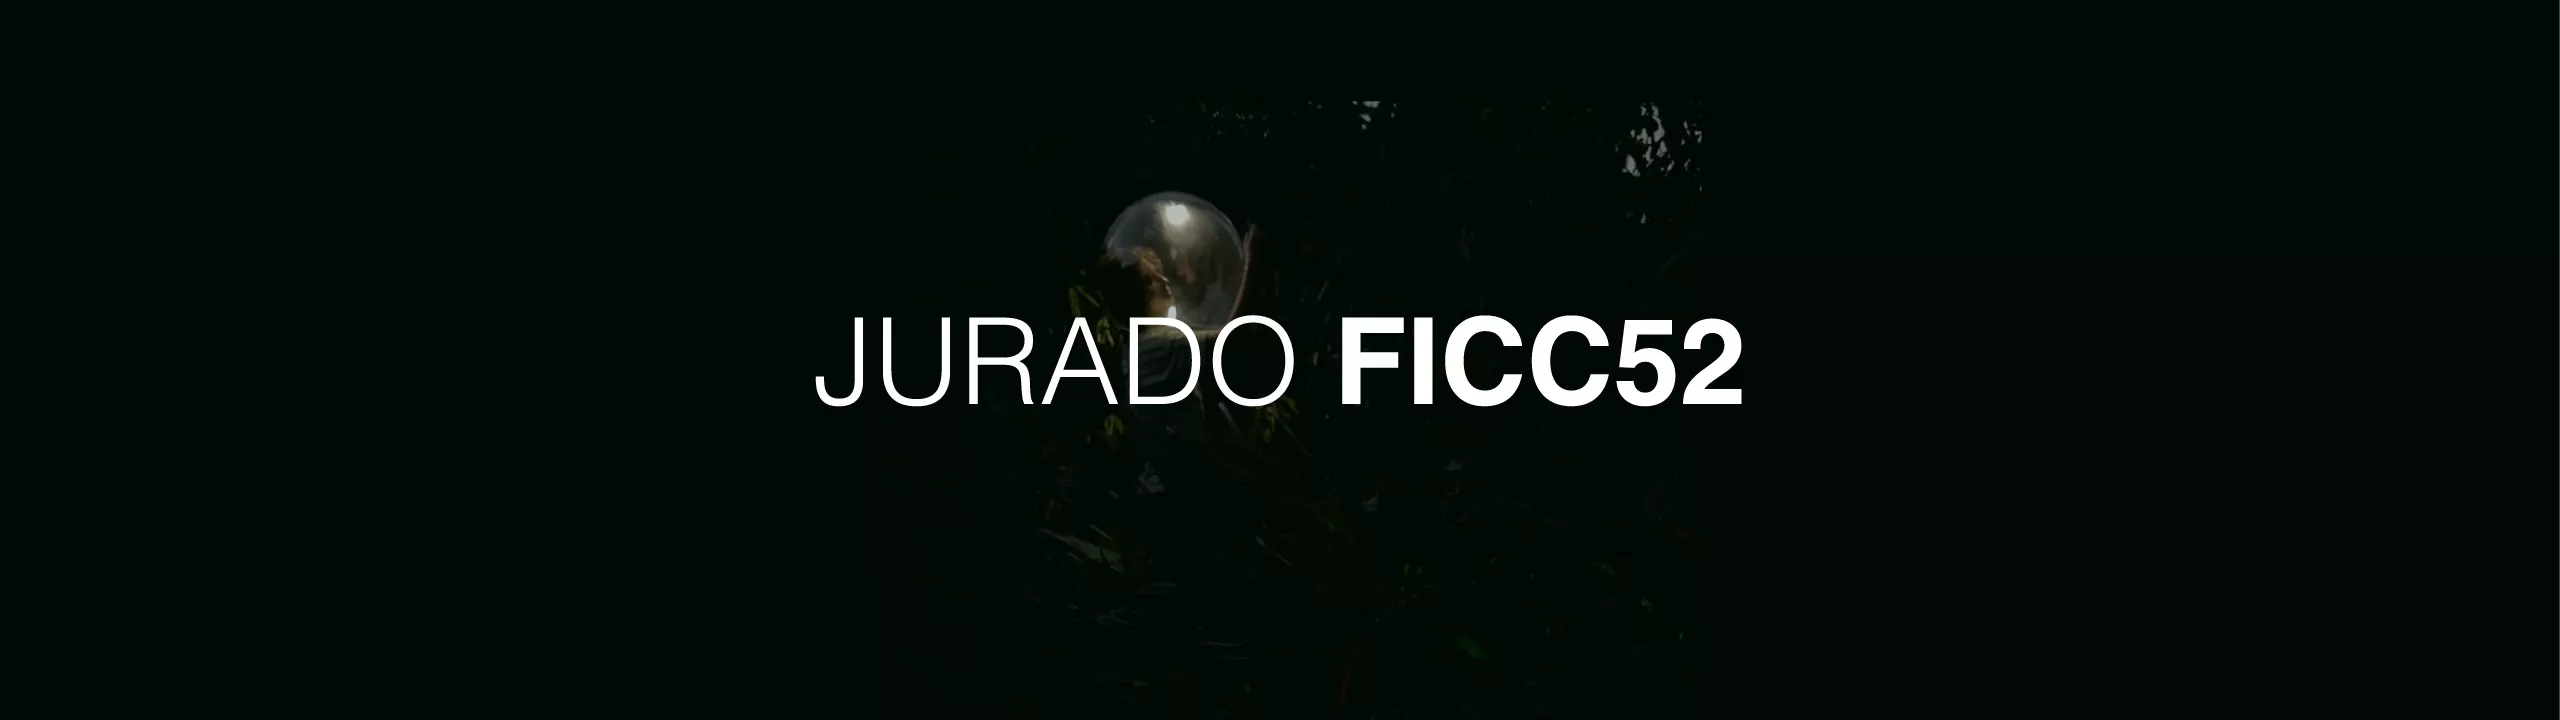 Jurado FICC52